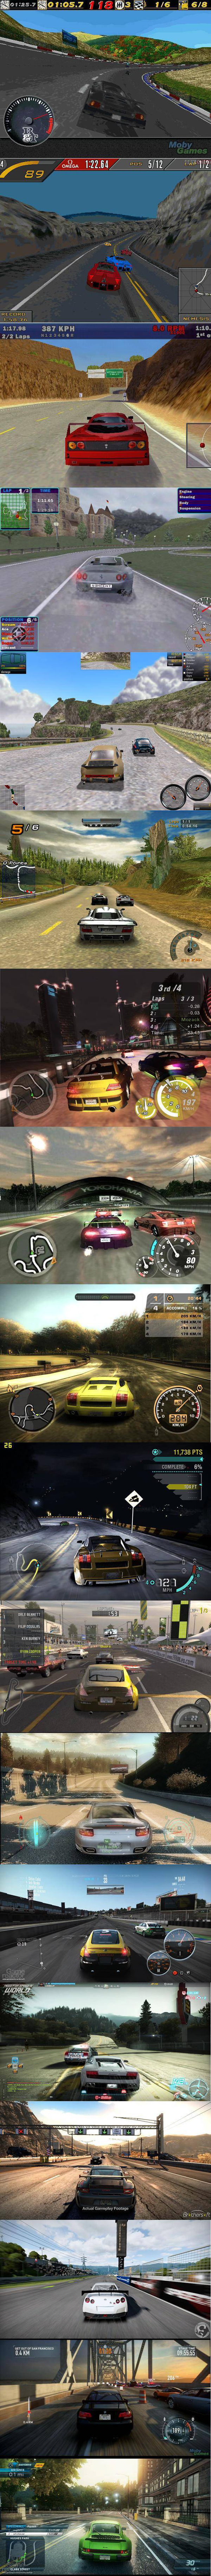 Lịch sử Need for Speed qua những tấm hình  1